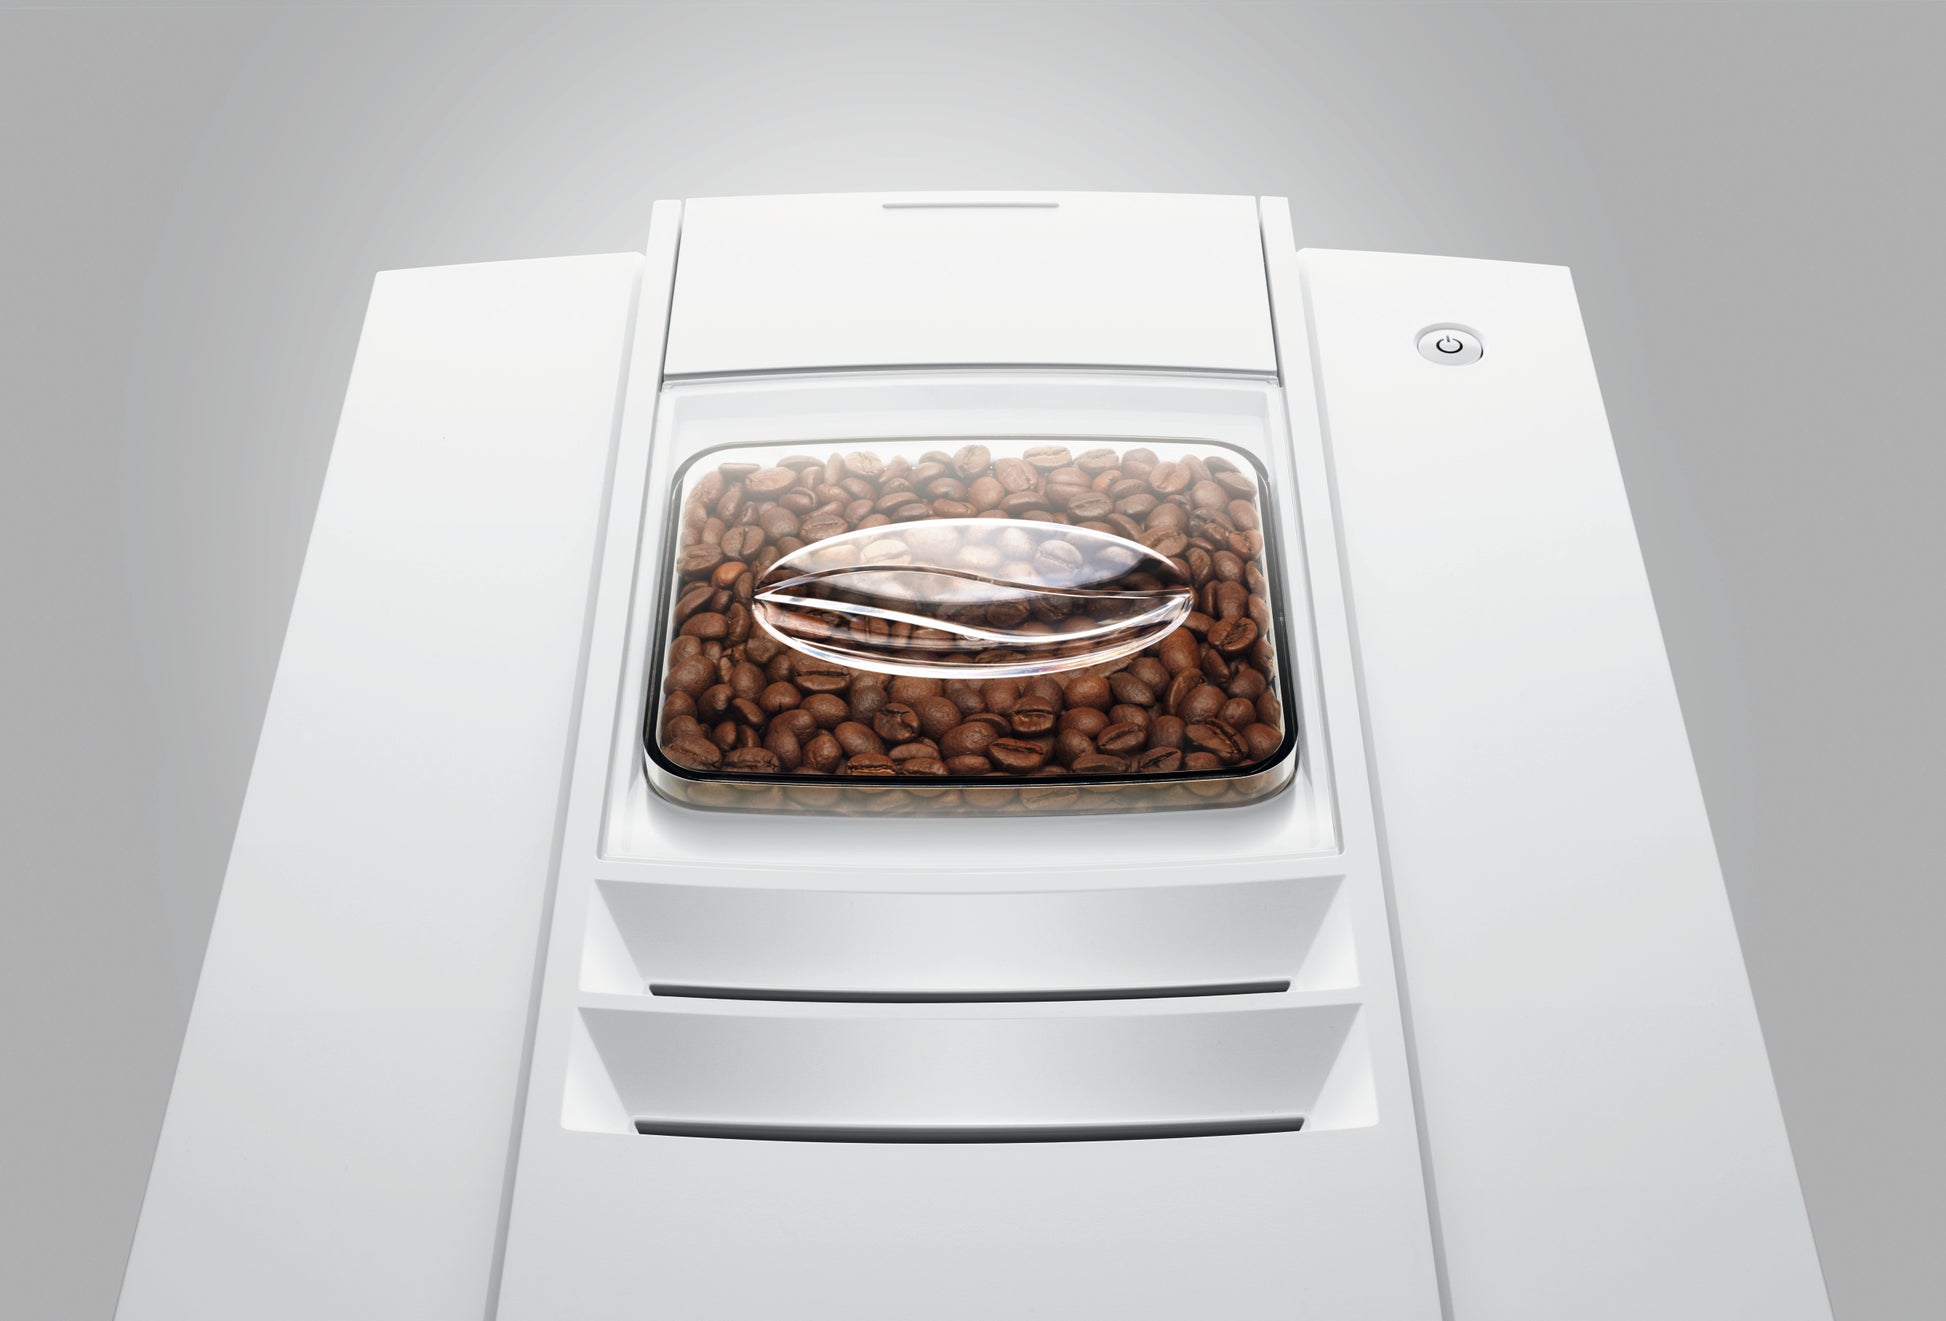 JURA E4 Automatic Espresso Machine in Piano White – Whole Latte Love